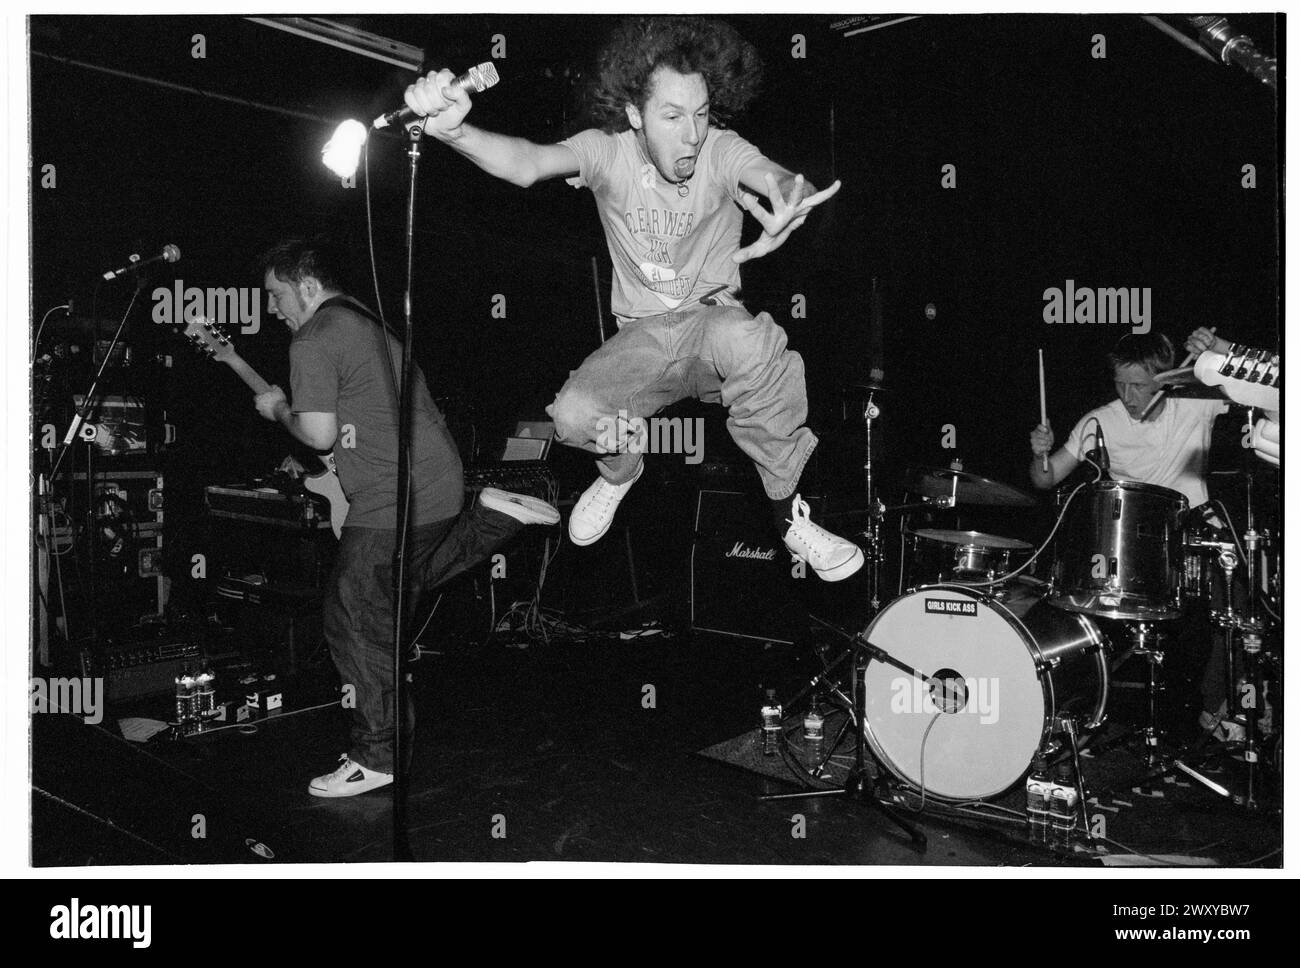 HUNDRED REASONS, EMO CONCERT, 2001: Colin Doran della band Emo rock Hundred Reaons salta in mezzo alla folla suonando al Clwb Ifor Bach Welsh Club in Galles, Regno Unito, 14 maggio 2001. Foto: Rob Watkins. INFO: 100 Reasons, un gruppo rock post-hardcore britannico formatosi nel 1999 a Londra, ha guadagnato il plauso per le loro energiche esibizioni dal vivo e la scrittura emotiva delle canzoni. Successi come "If i Could" e "Silver" hanno mostrato il loro suono dinamico, guadagnando loro un seguito devoto nella scena musicale dei primi anni '2000. Foto Stock